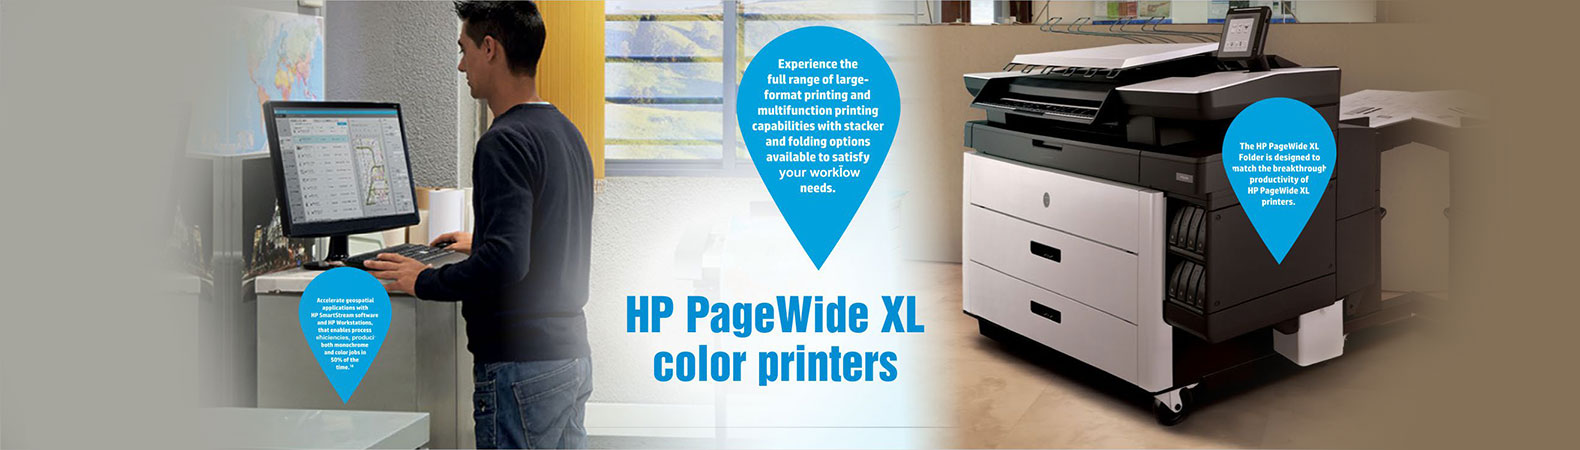 B3P06A HP 727 DesignJet Printhead – HP Printer  Plotter Online Shop